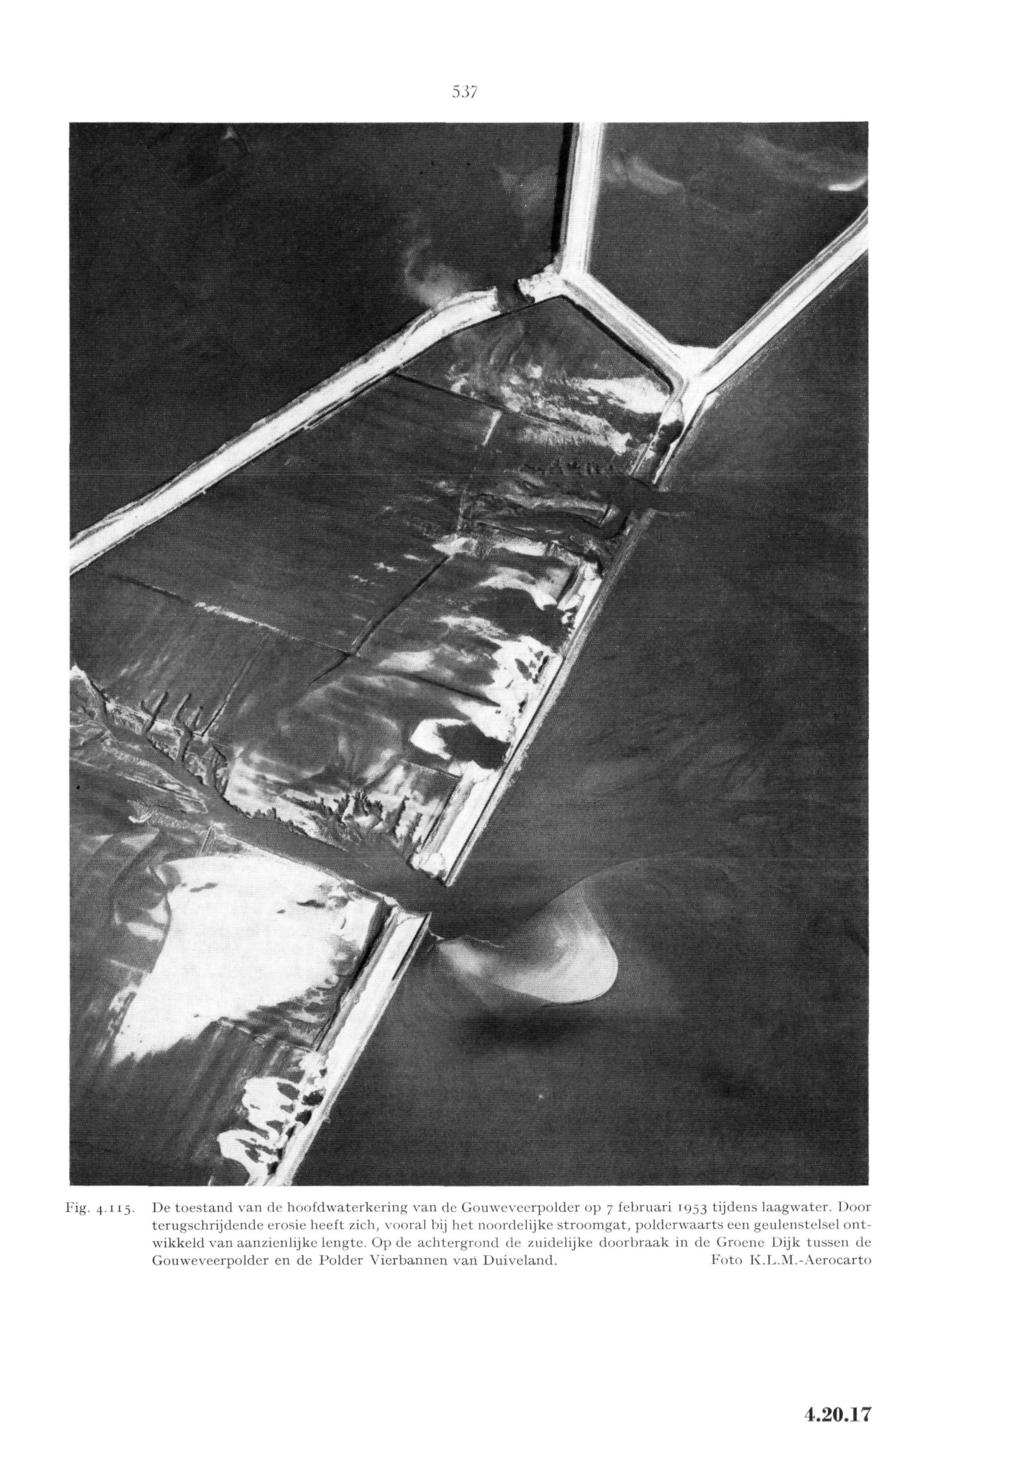 5.57 7 1... : '"' ' ^ ' ^ ' ' \ P - JT *: ".. '' JV t/j /ViiJH t f mêbêv' ^ J Fig. 4115. De toestand van de hoofdwaterkcring van de Gouweveerpolder op 7 februari 1953 tijdens laagwater.